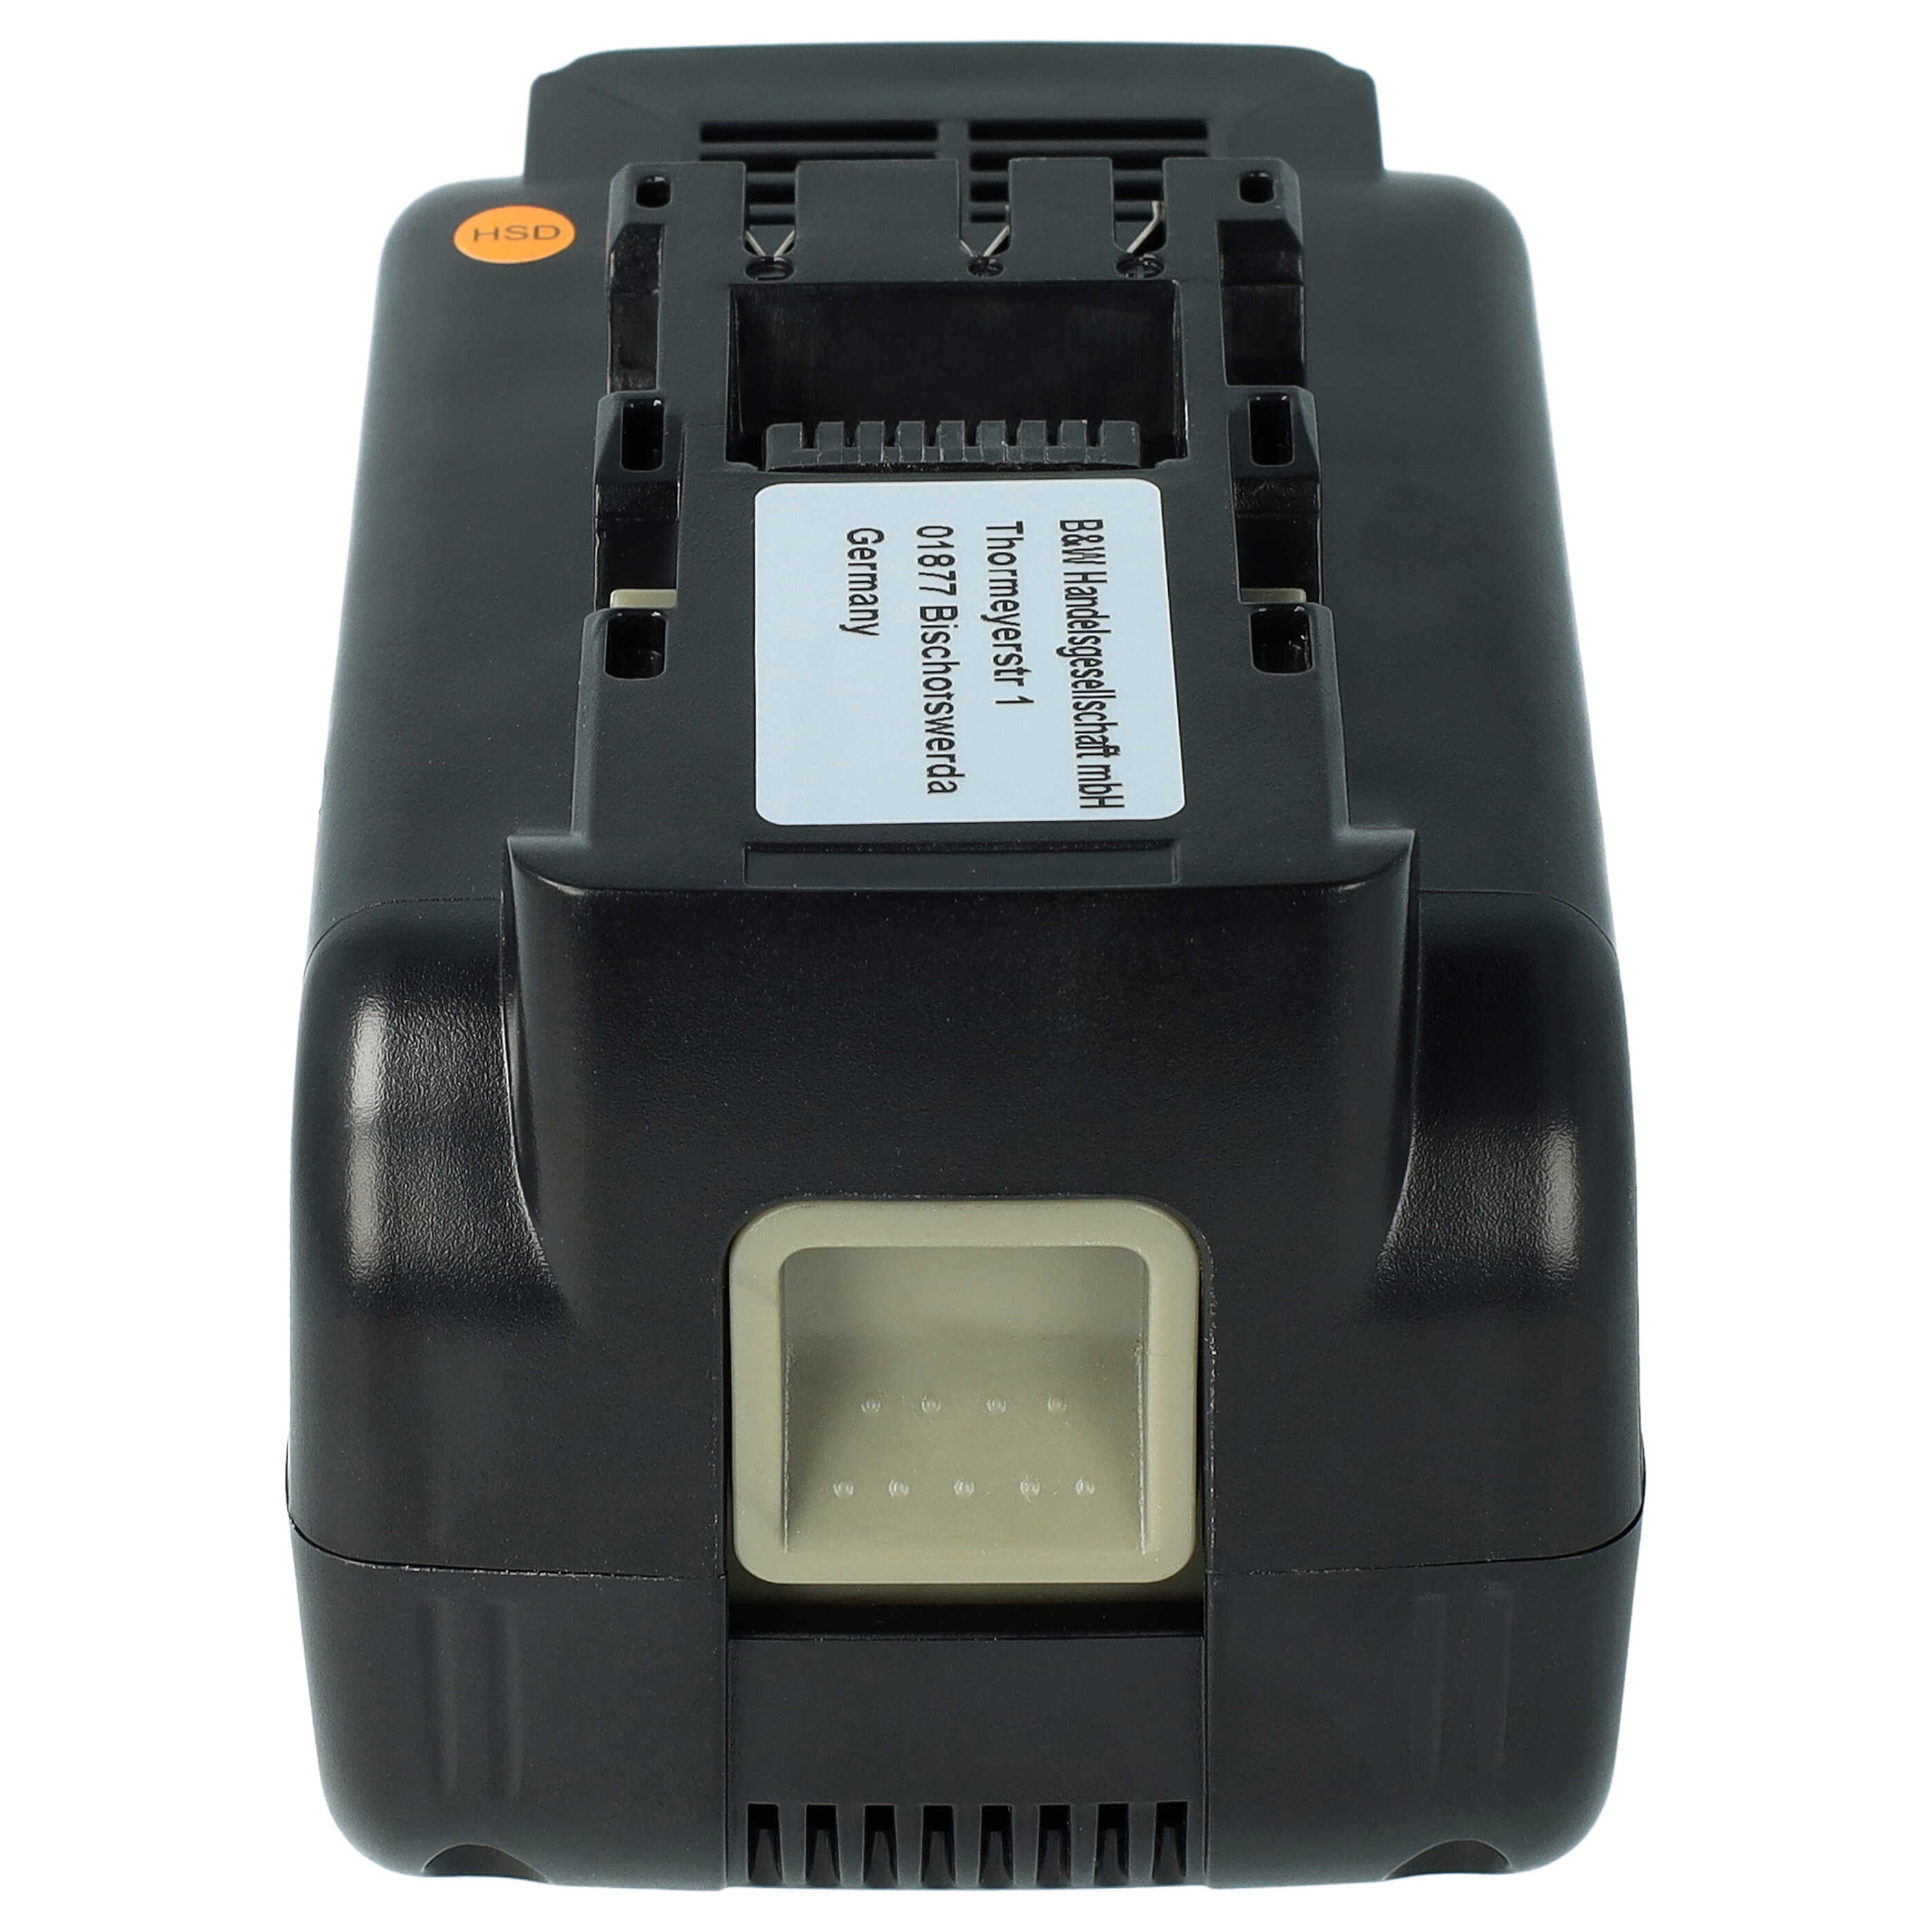 Batteria per attrezzo sostituisce Panasonic EZ9L80, EY9L80B, EY9L80 - 5000 mAh, 28,8 V, Li-Ion